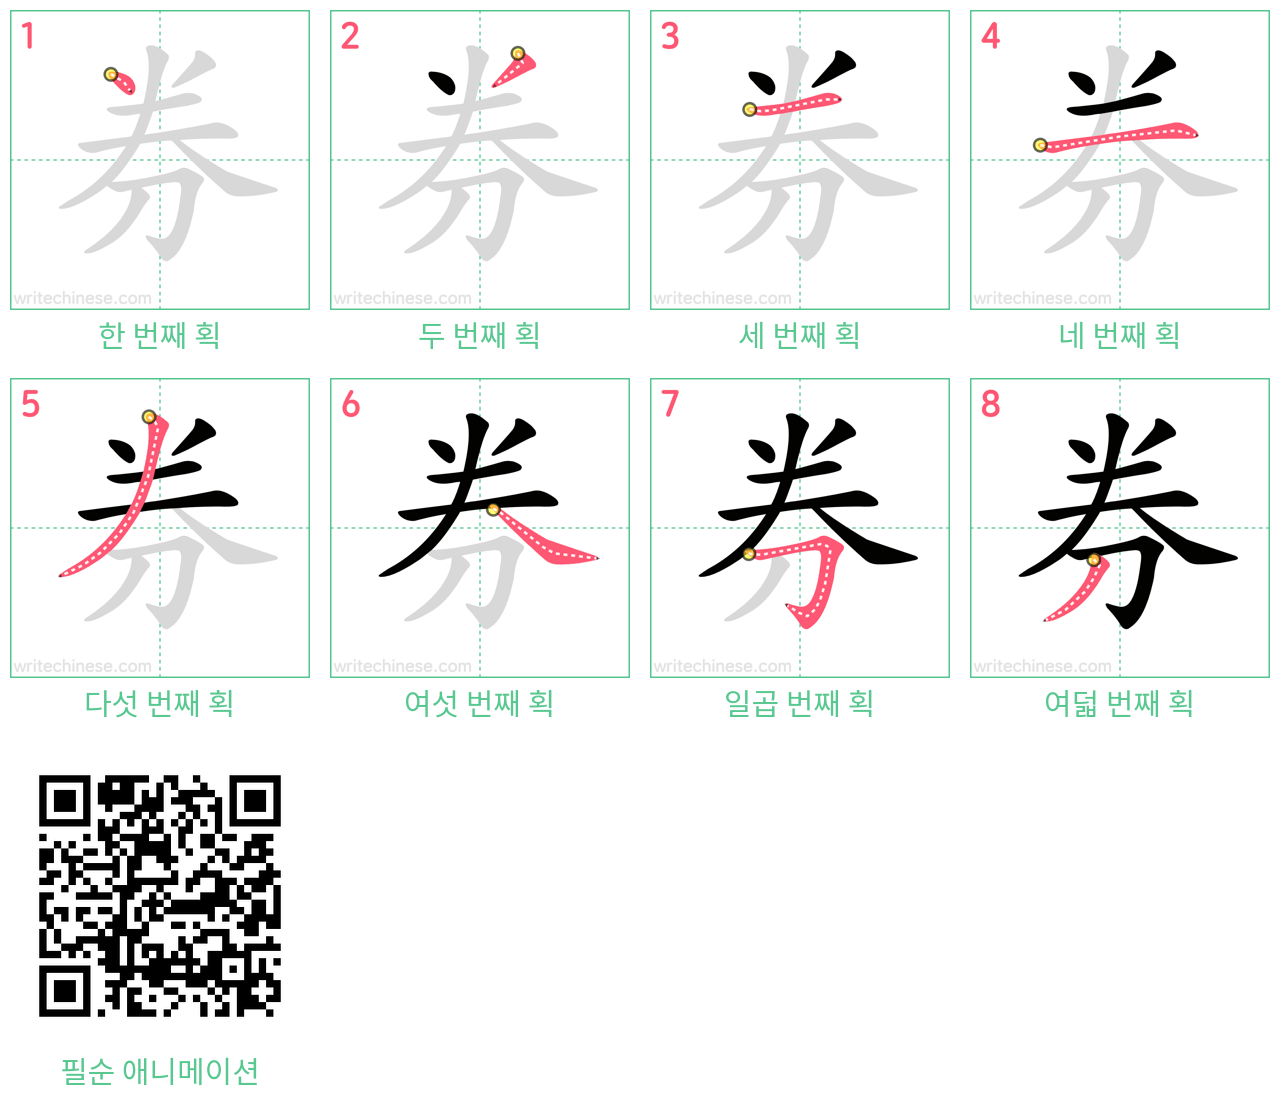 券 step-by-step stroke order diagrams